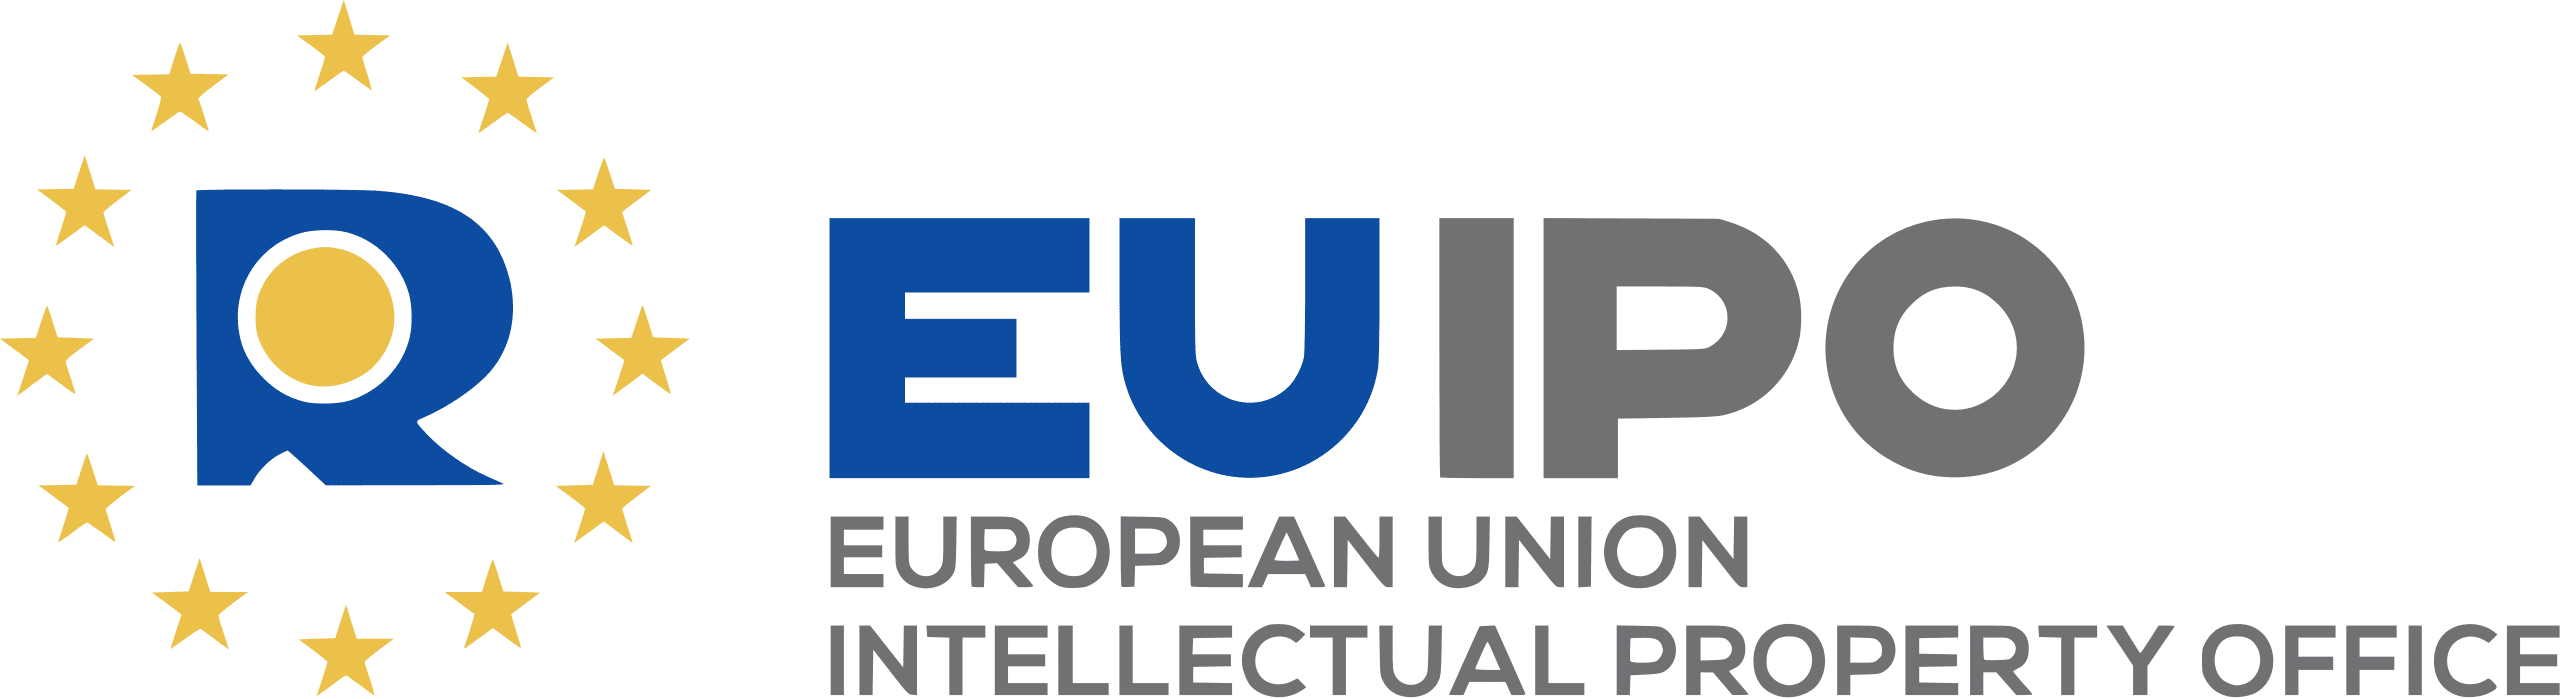 EUIPO_logo